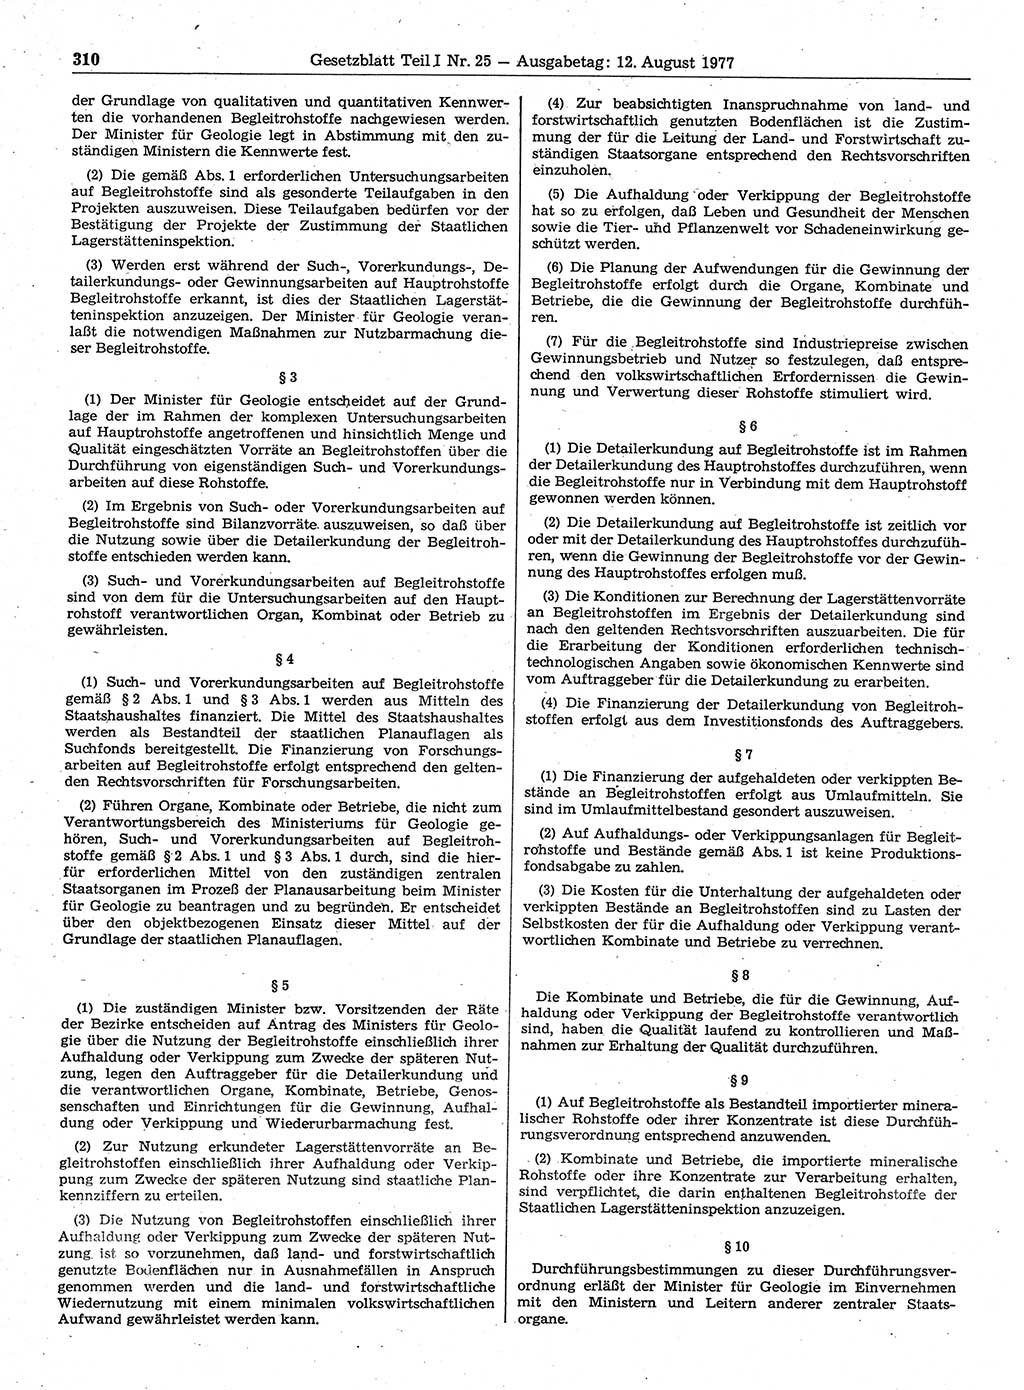 Gesetzblatt (GBl.) der Deutschen Demokratischen Republik (DDR) Teil Ⅰ 1977, Seite 310 (GBl. DDR Ⅰ 1977, S. 310)